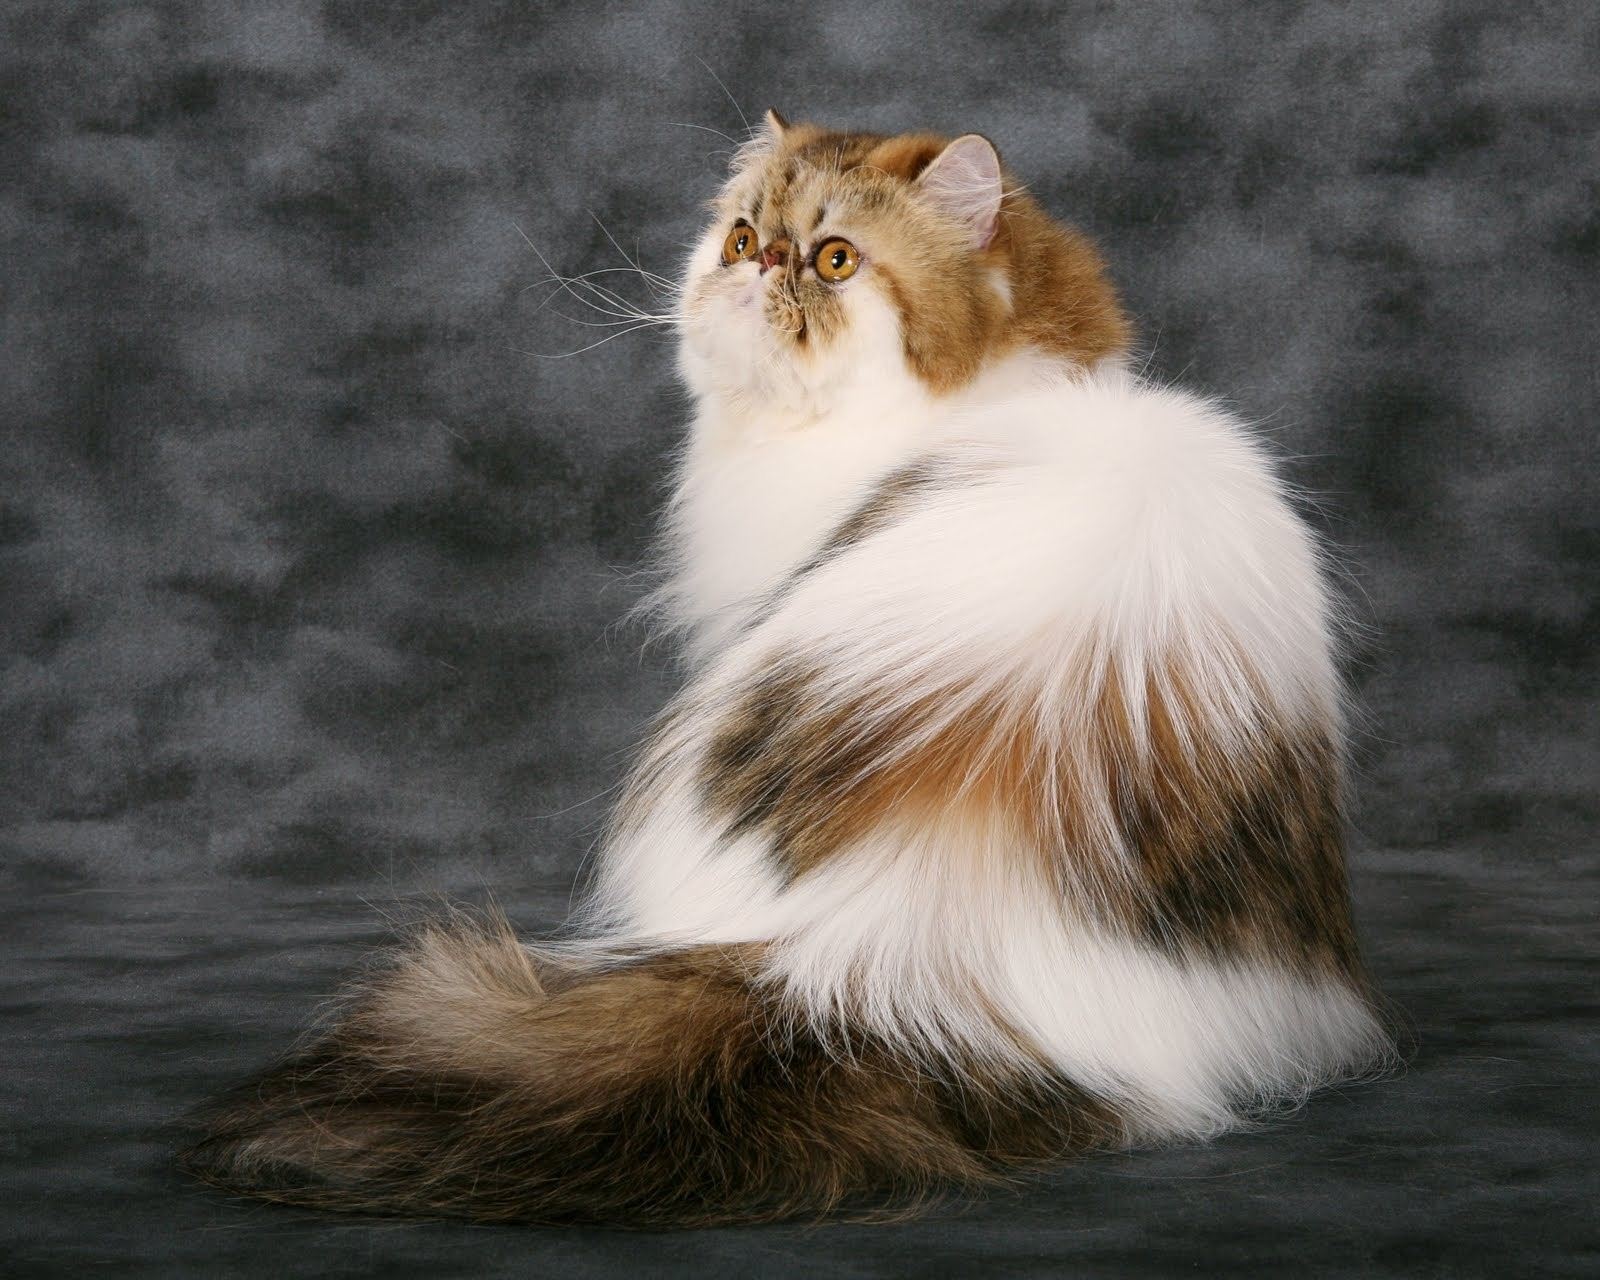 Название породы пушистых кошек фото и название